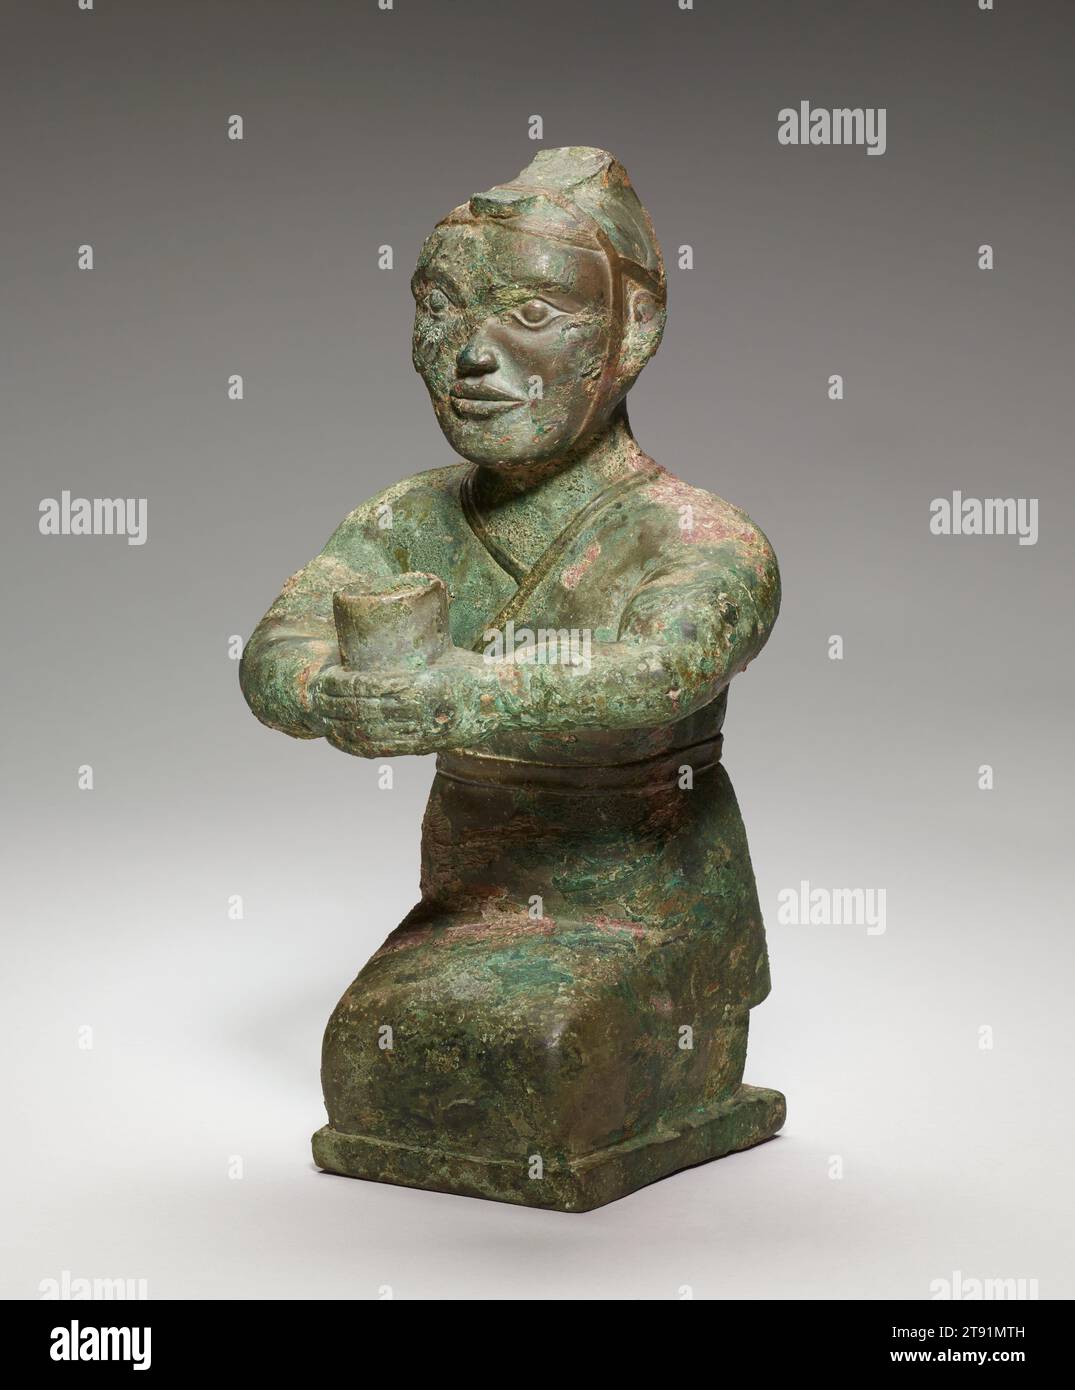 Figurine agenouillée, 4e siècle av. J.-C., 11 1/4 × 6 × 6 po., 7,3 lb. (28,58 × 15,24 × 15,24 cm, 3,3 kg), Bronze, Chine, 4e siècle av. J.-C., fouillée près de Luoyang, la capitale de la dynastie Zhou orientale (770–256 av. J.-C.), cette petite sculpture d'un homme agenouillé tenant un vaisseau en forme de tube dans ses mains étendues peut avoir servi de porte-torche dans une tombe. La figurine est vêtue d'un vêtement ajusté qui s'enroule de gauche à droite et est ceinturé avec une bande étroite. Le couvre-tête, un peu comme un casque ouvert, est large à l'arrière et monte à un sommet pointu avant de descendre dans une bande étroite en forme de langue Banque D'Images